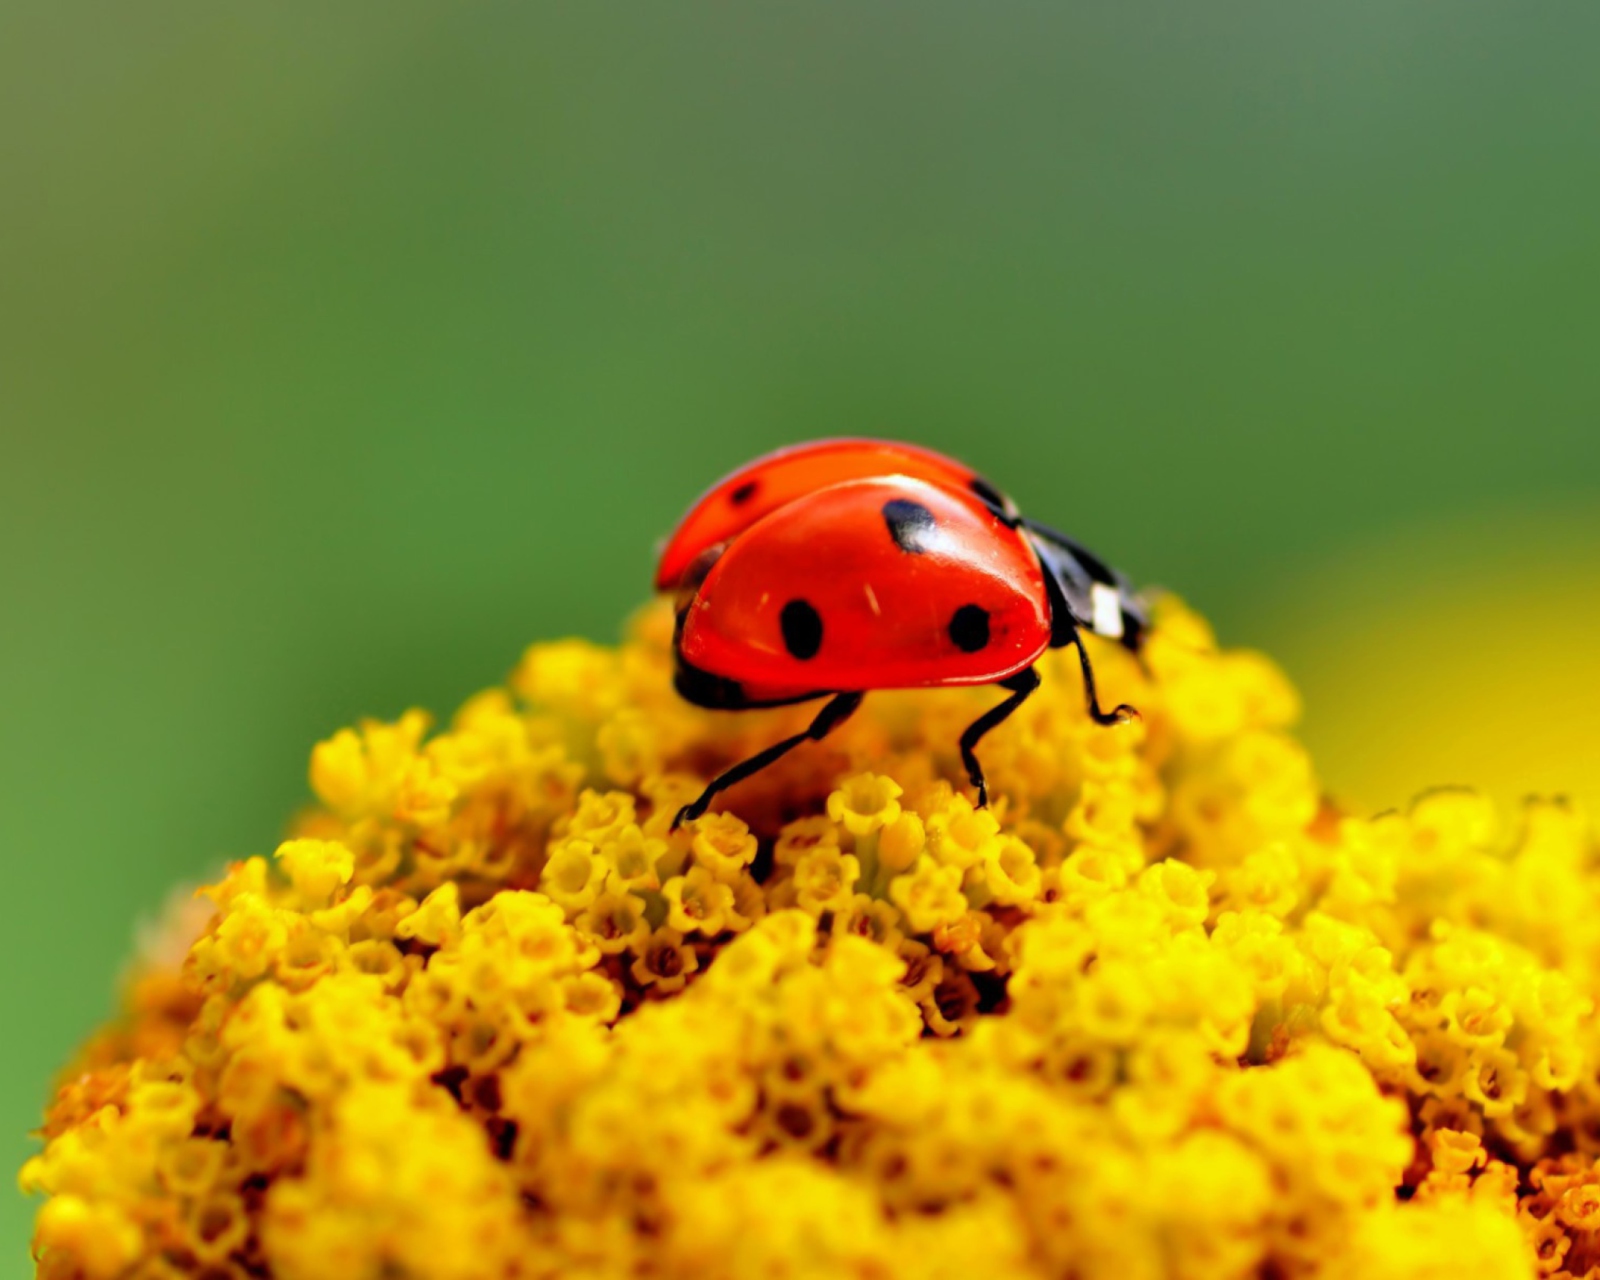 Обои Ladybug On Yellow Flower 1600x1280